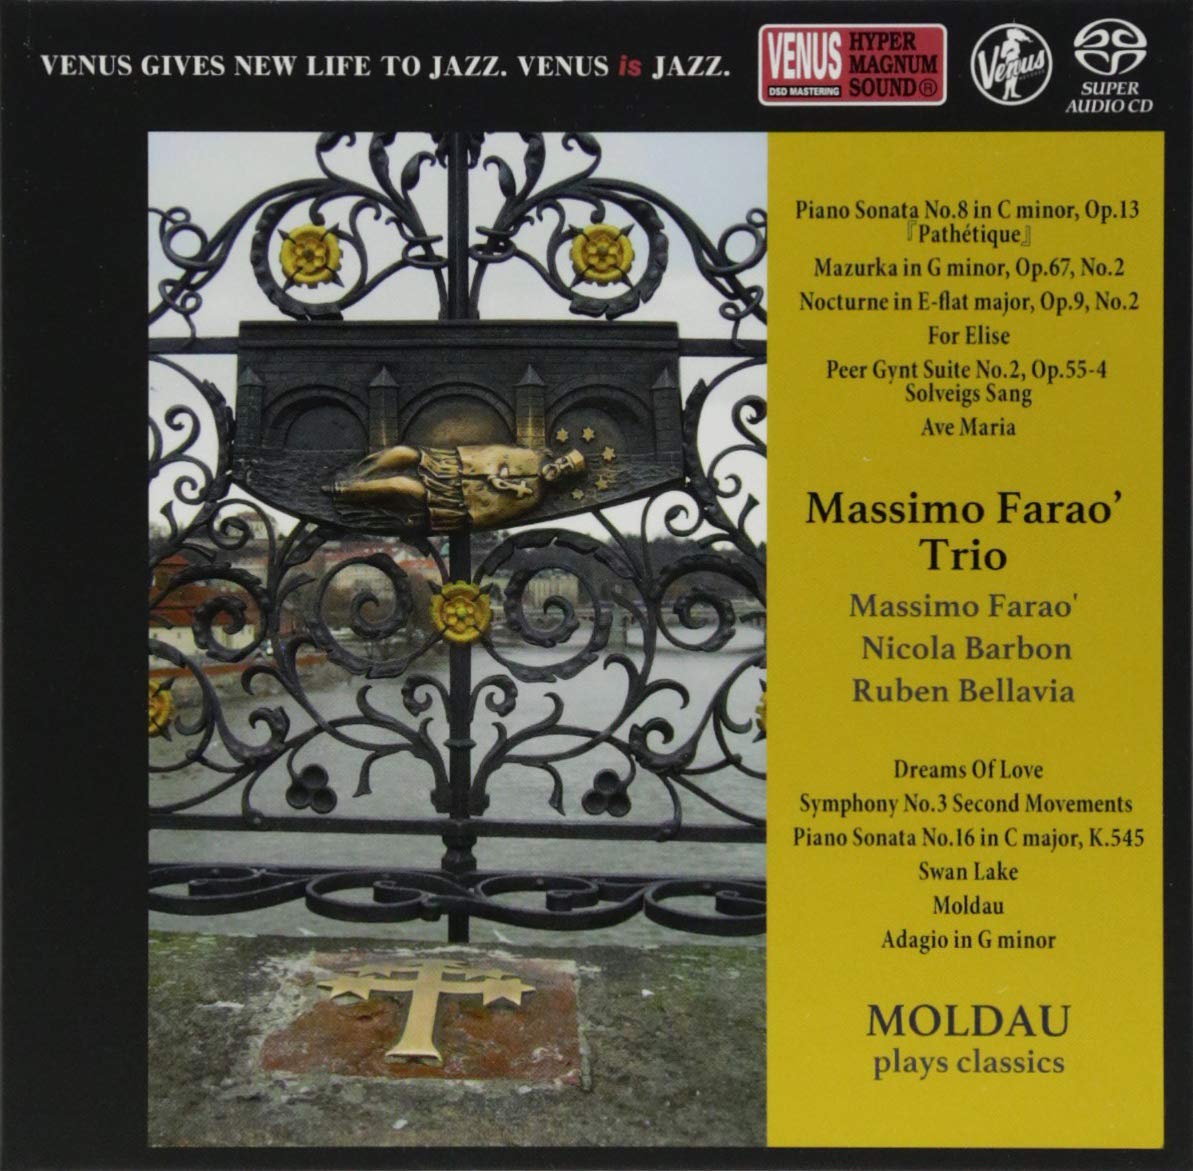 Audio Cd Massimo Farao - Molfau: Plays Classics NUOVO SIGILLATO, EDIZIONE DEL 28/09/2018 SUBITO DISPONIBILE